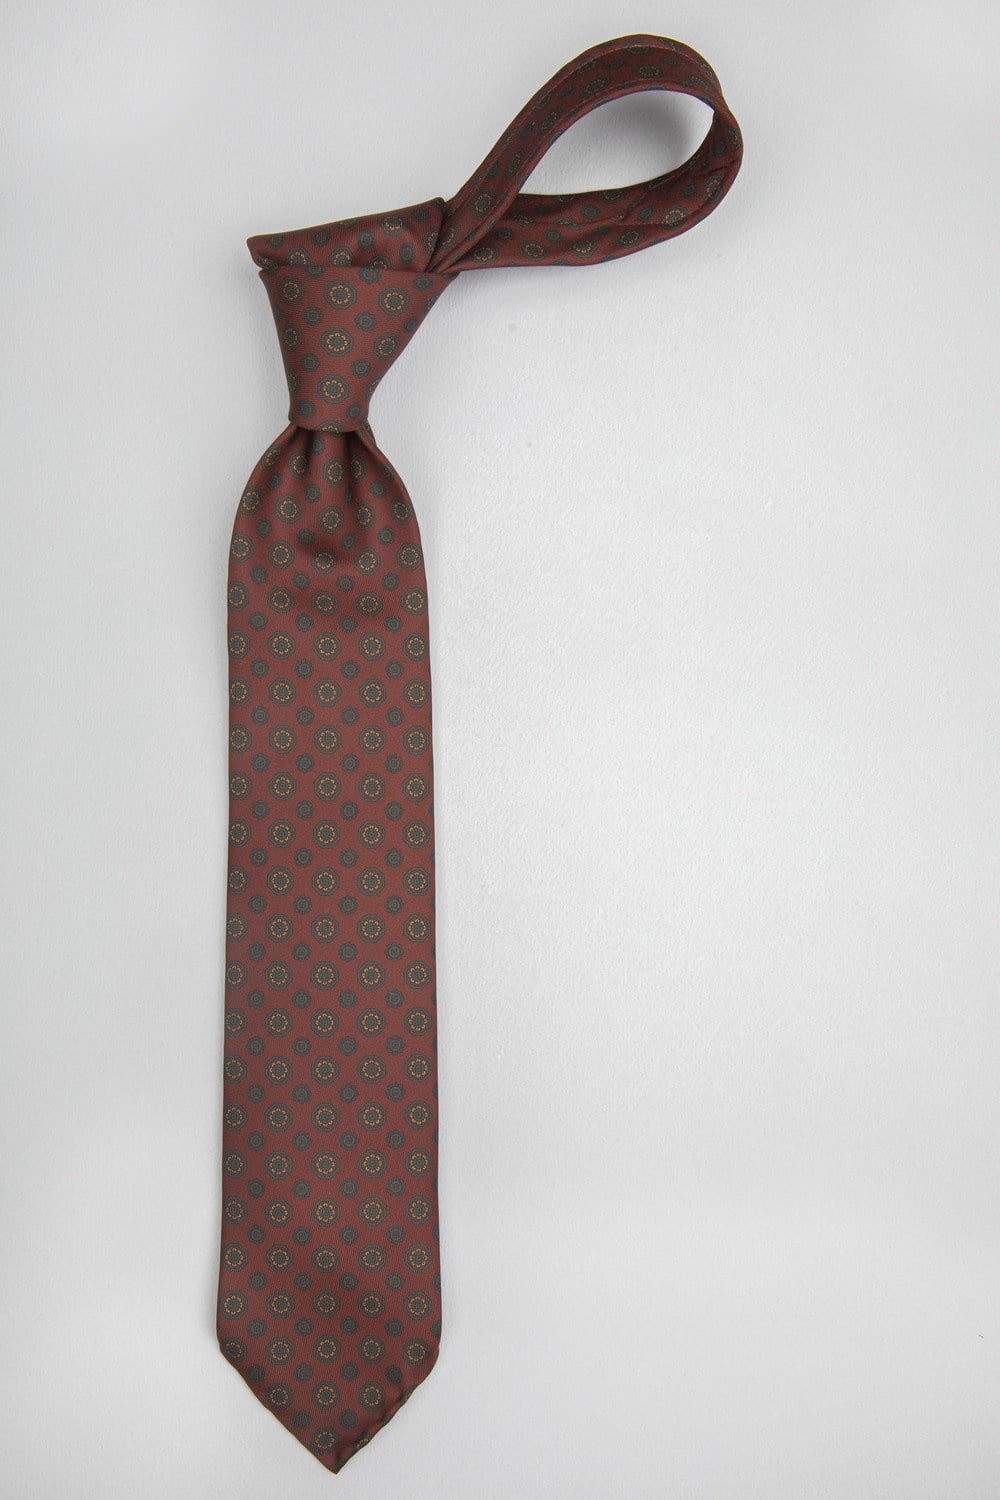 cravate dare in paris en soie couleur lie de vin à motif ottoman